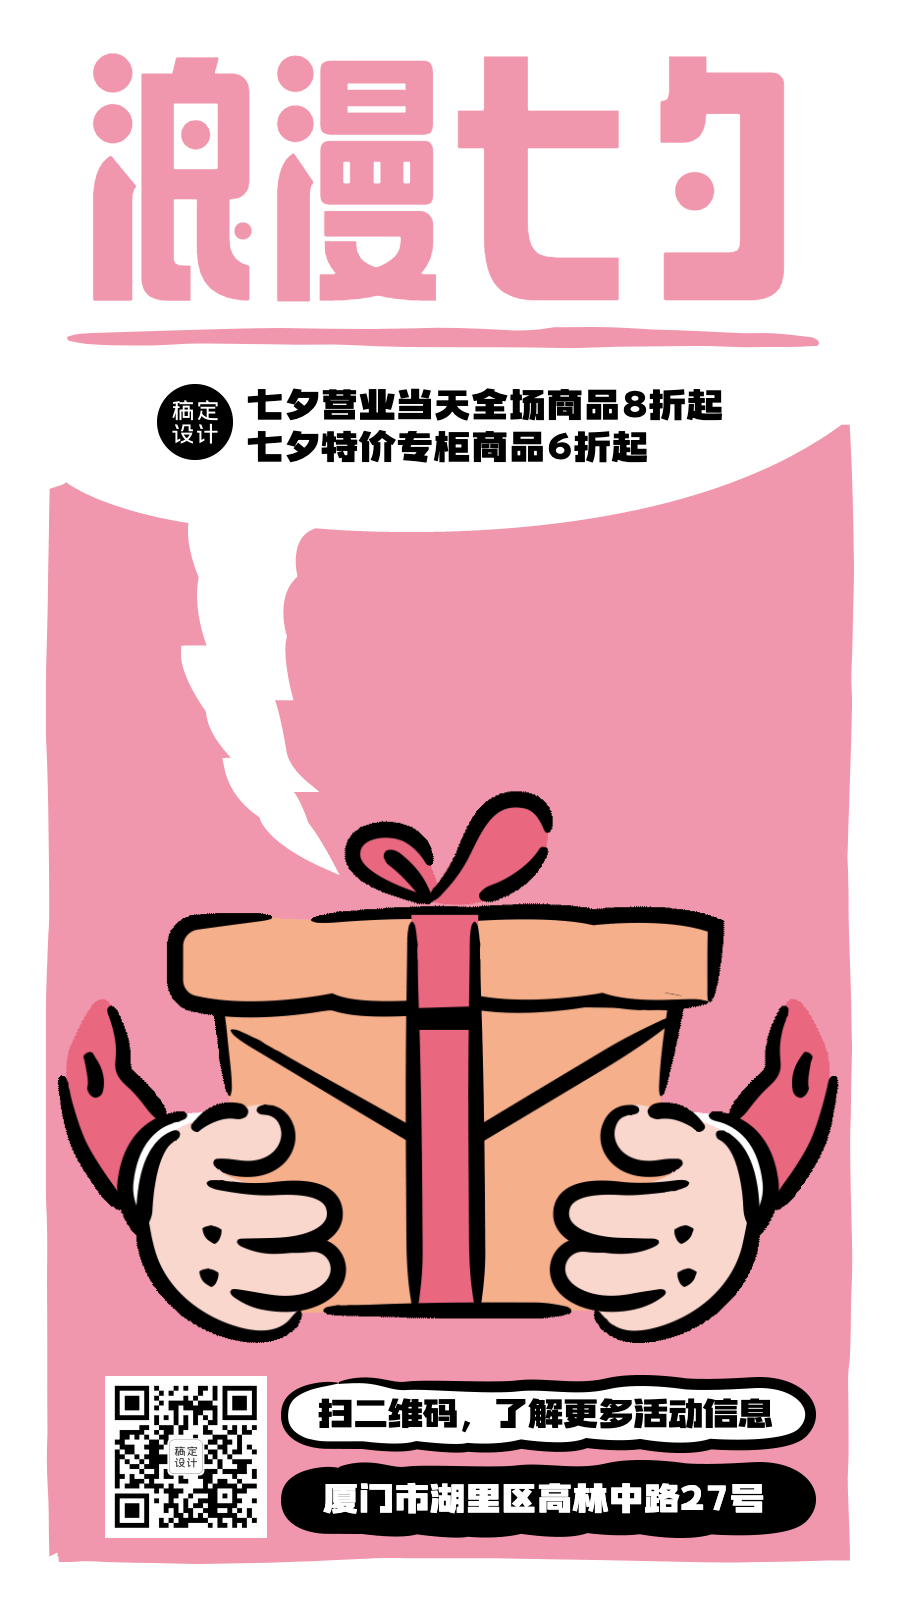 七夕情人节活动营销可爱动态海报预览效果